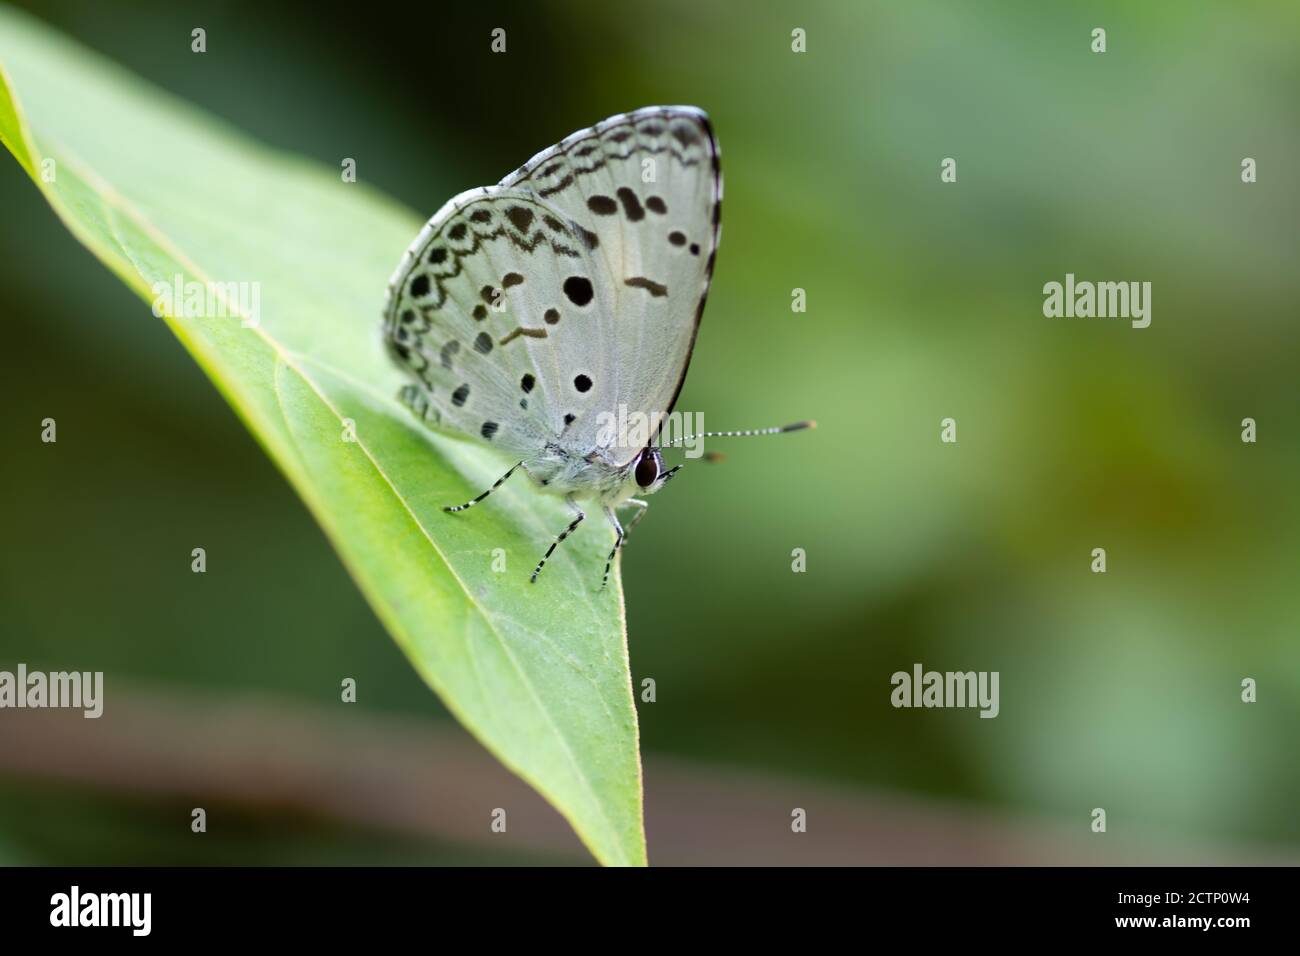 Ein gewöhnlicher Heckenblauer (Acytolepis puspa) Schmetterling, der auf einem Blatt im Garten ruht. Stockfoto